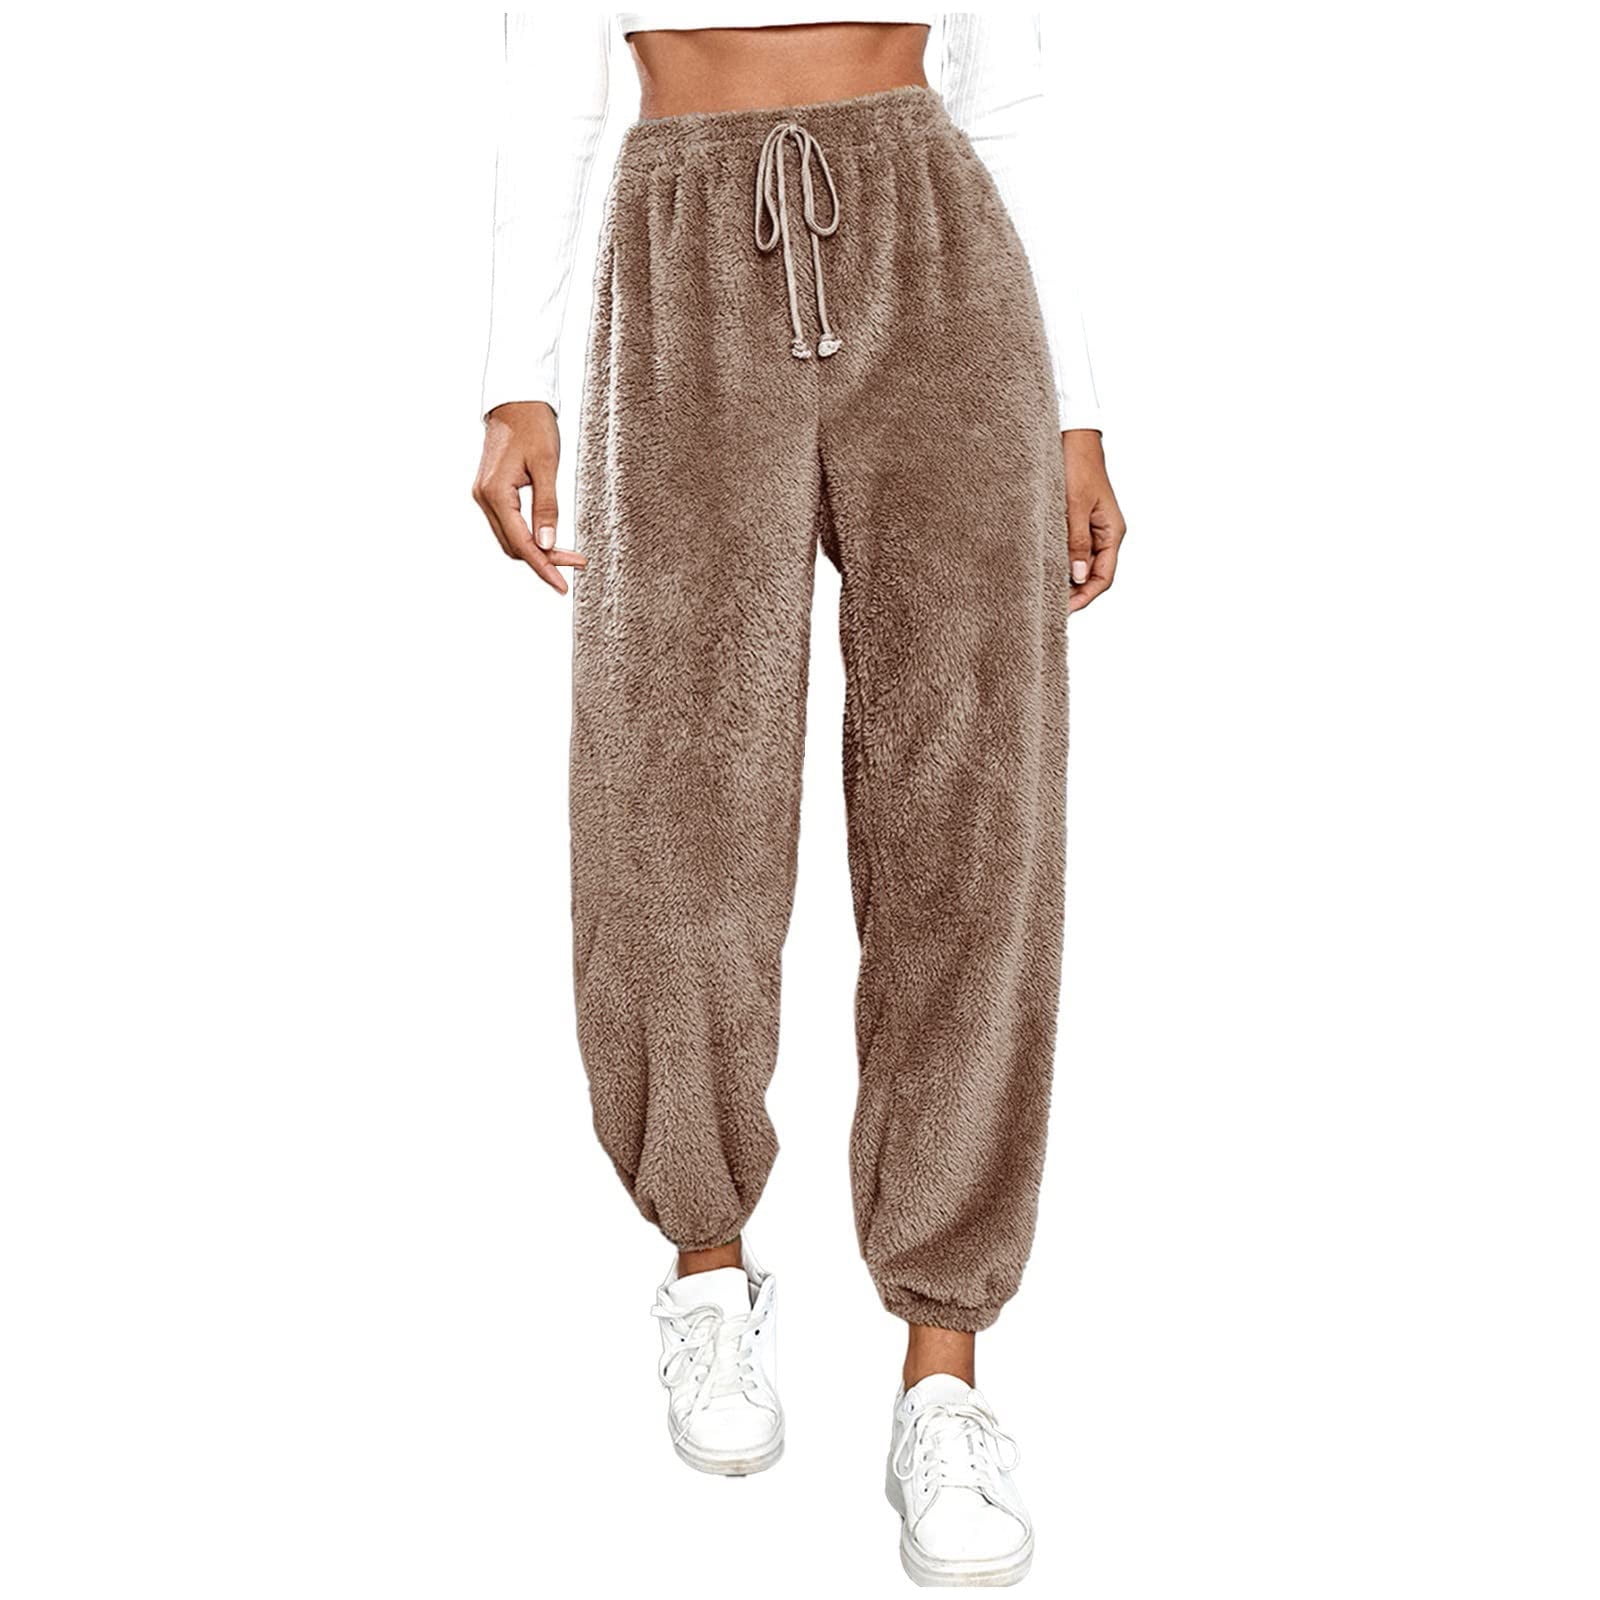 HAPIMO Sales Womens Fuzzy Fleece Pants Warm Cozy Pjs Bottoms Fleece  Sweatpants Pants Fluffy Sleepwear with Drawstring Silver L 